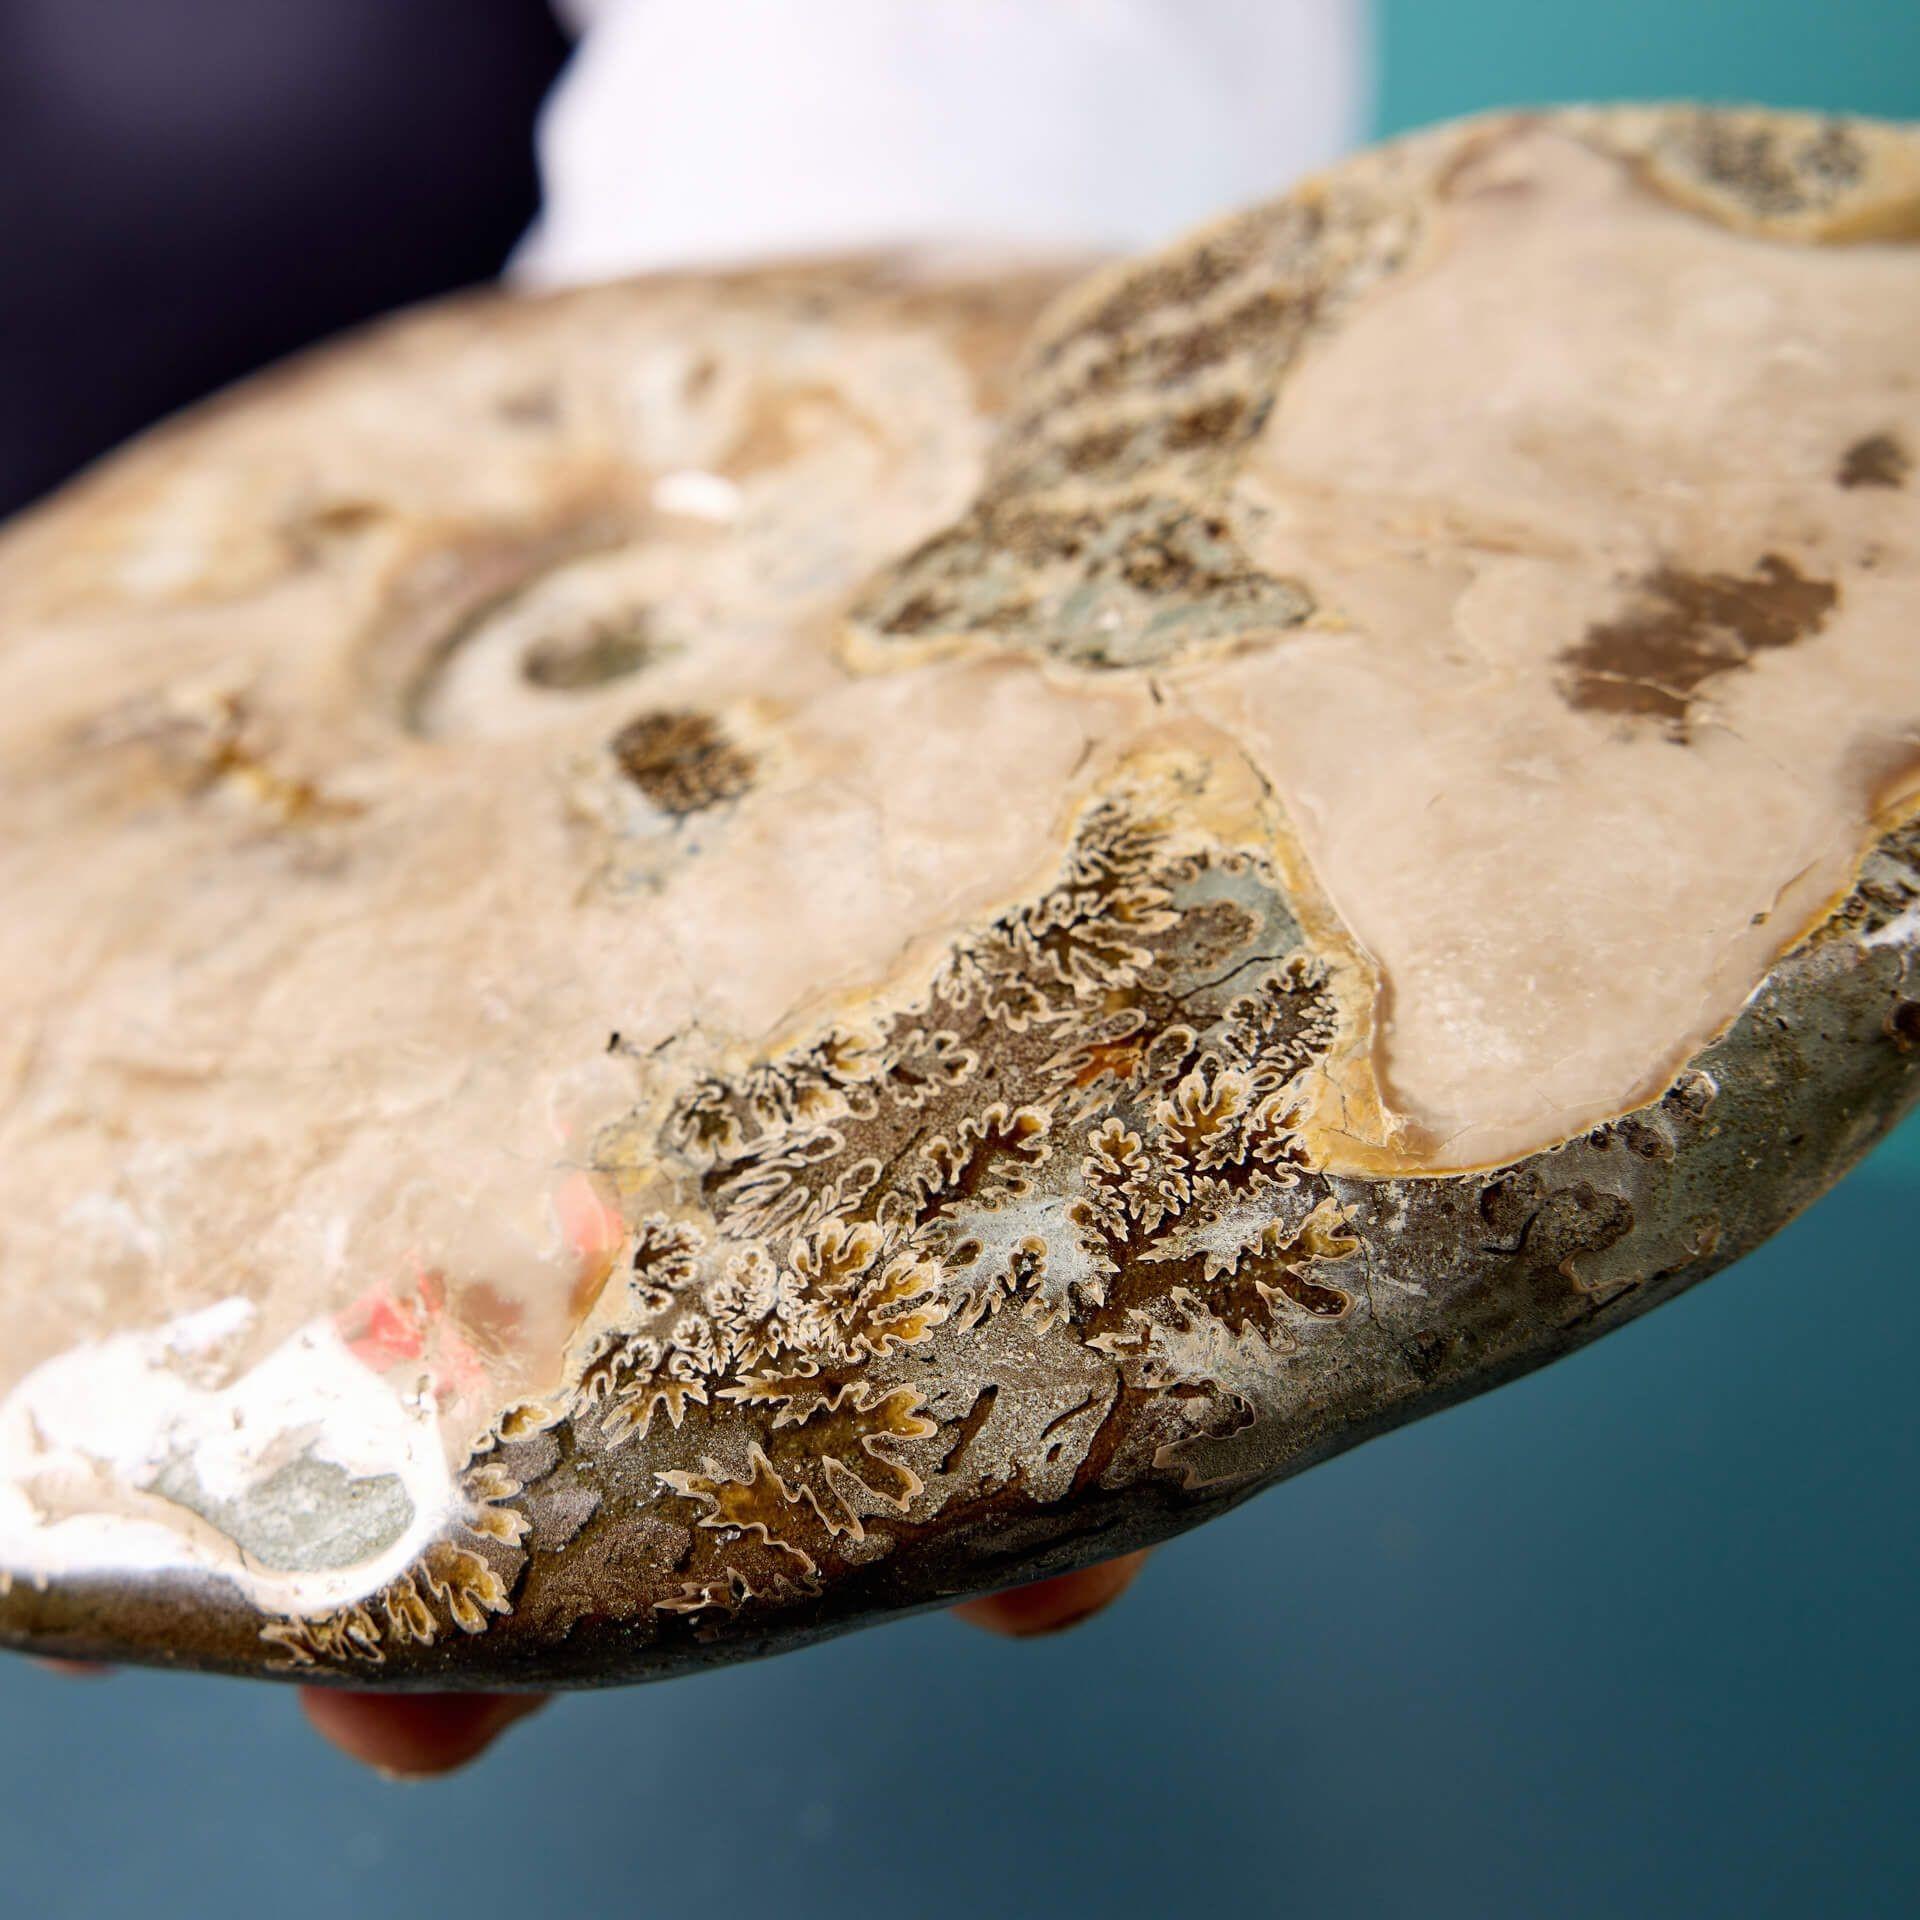 Fossile complet d'ammonite préhistorique Cleoniceras opalisée et irisée, originaire de Madagascar, présenté sur un socle exclusif en plâtre peint de qualité muséale. Vieux de plus de 200 millions d'années, ce fossile d'ammonite a développé un éclat